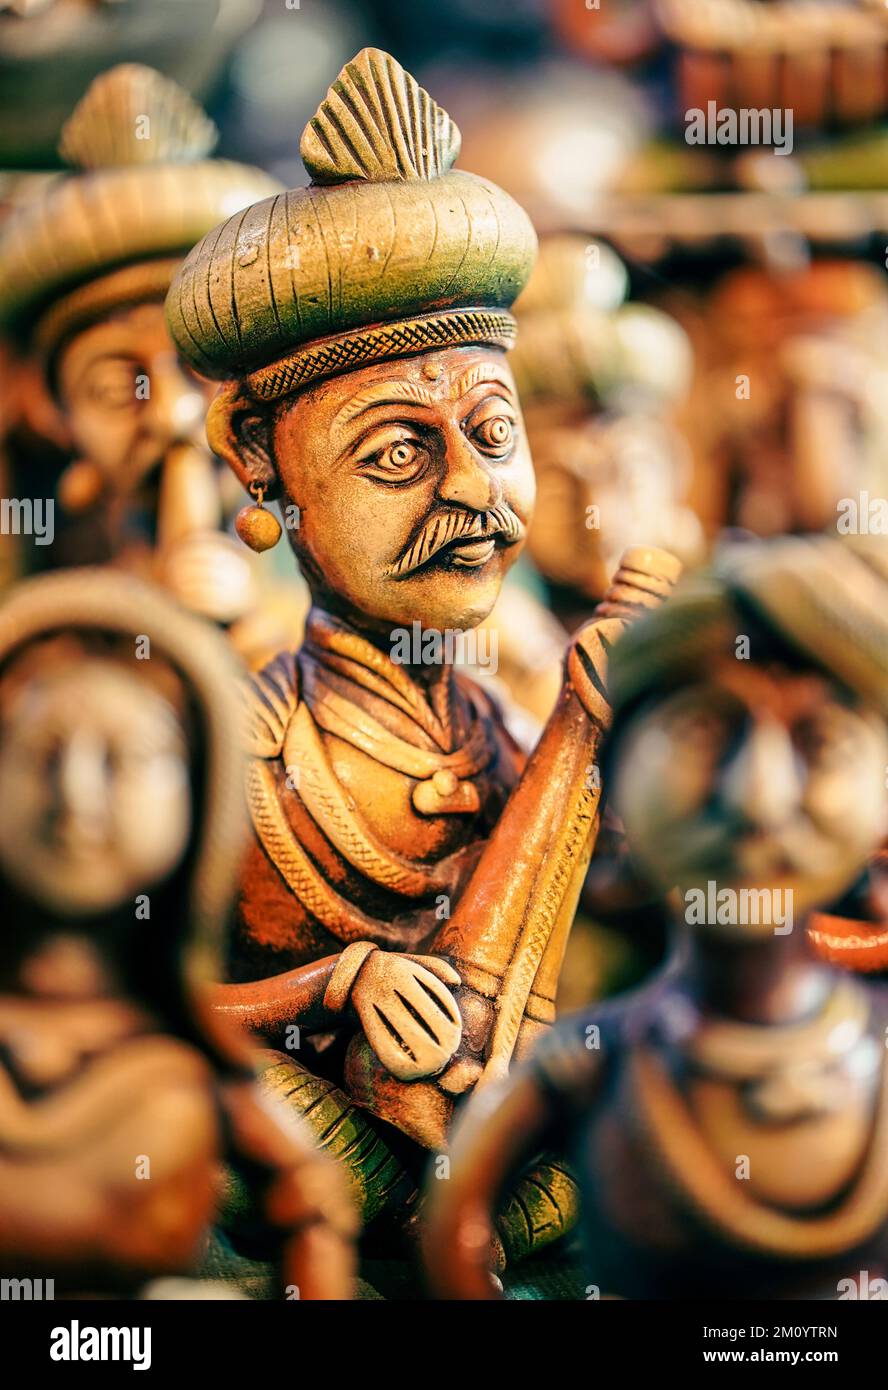 Artisanat, The Art of India, objets de démonstration et objets de collection de la statue en terre cuite, magnifiques poupées en argile de musiciens folkloriques miniatures qui se produisent dans un groupe de c Banque D'Images